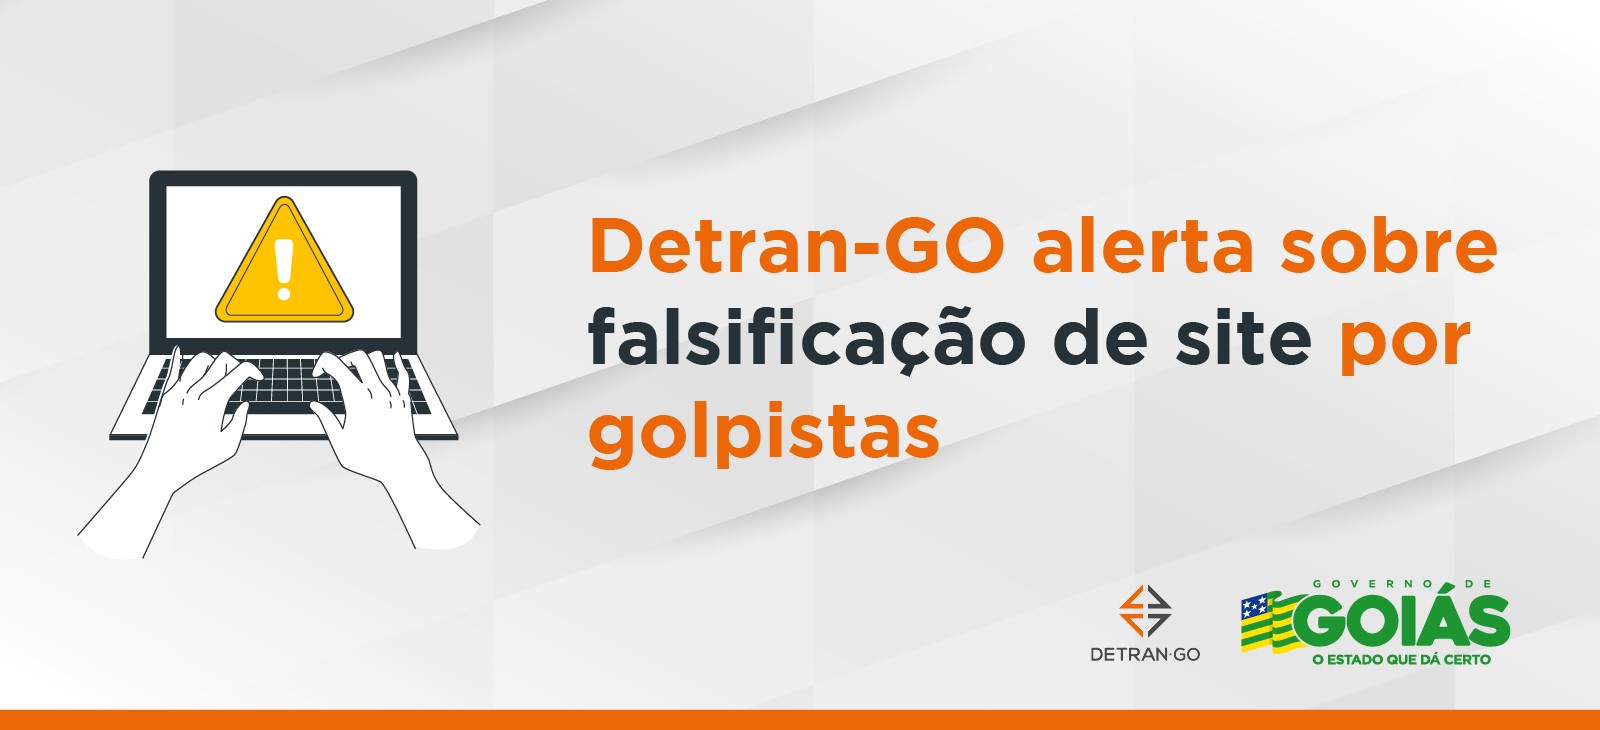 Detran-GO alerta sobre falsificação de site por golpistas